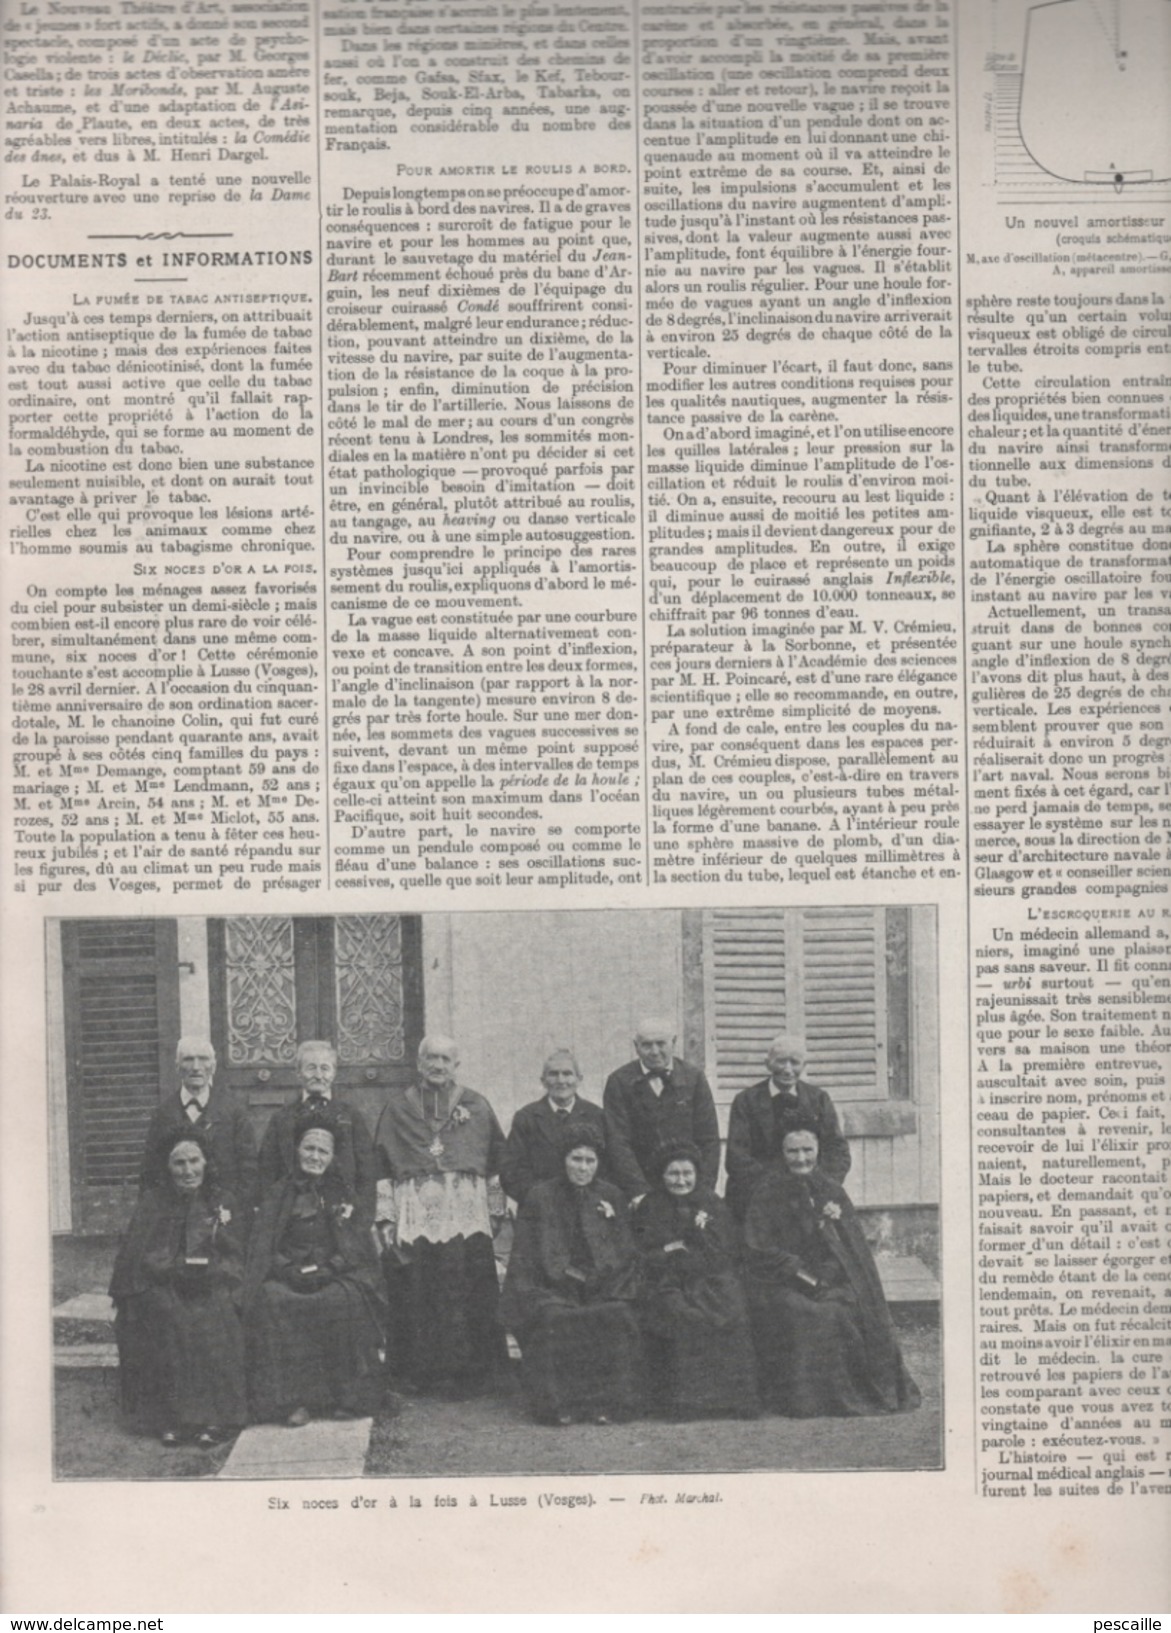 L'ILLUSTRATION 18 5 1907  BEZIERS - TSAREVITCH - SALONS 1907 - EXPOSITION COLONIALE VINCENNES - METZ - LUSSE - VINASSAN